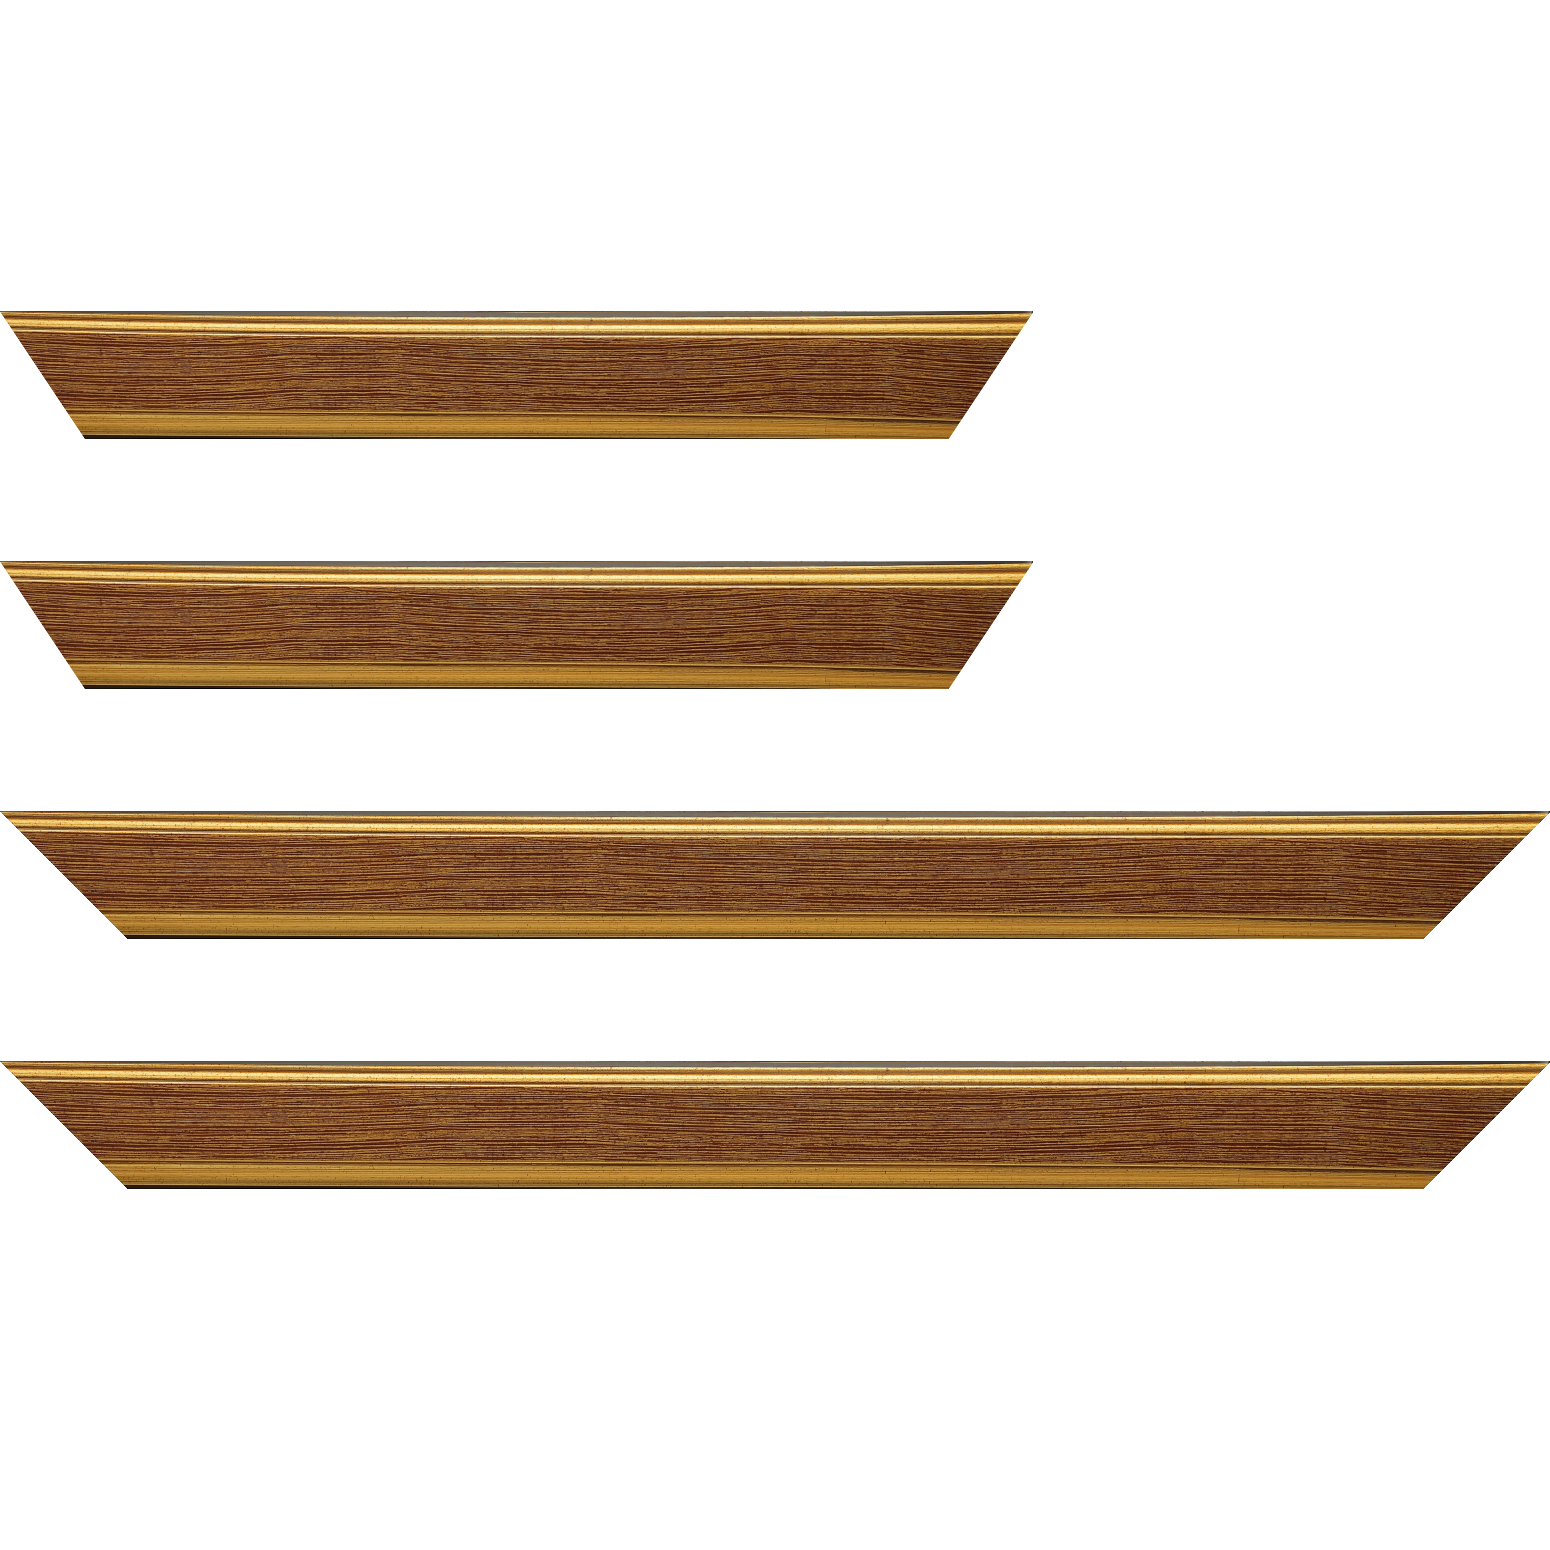 Baguette bois profil plat largeur 3.5cm couleur or fond bordeaux filet or - 59.4x84.1